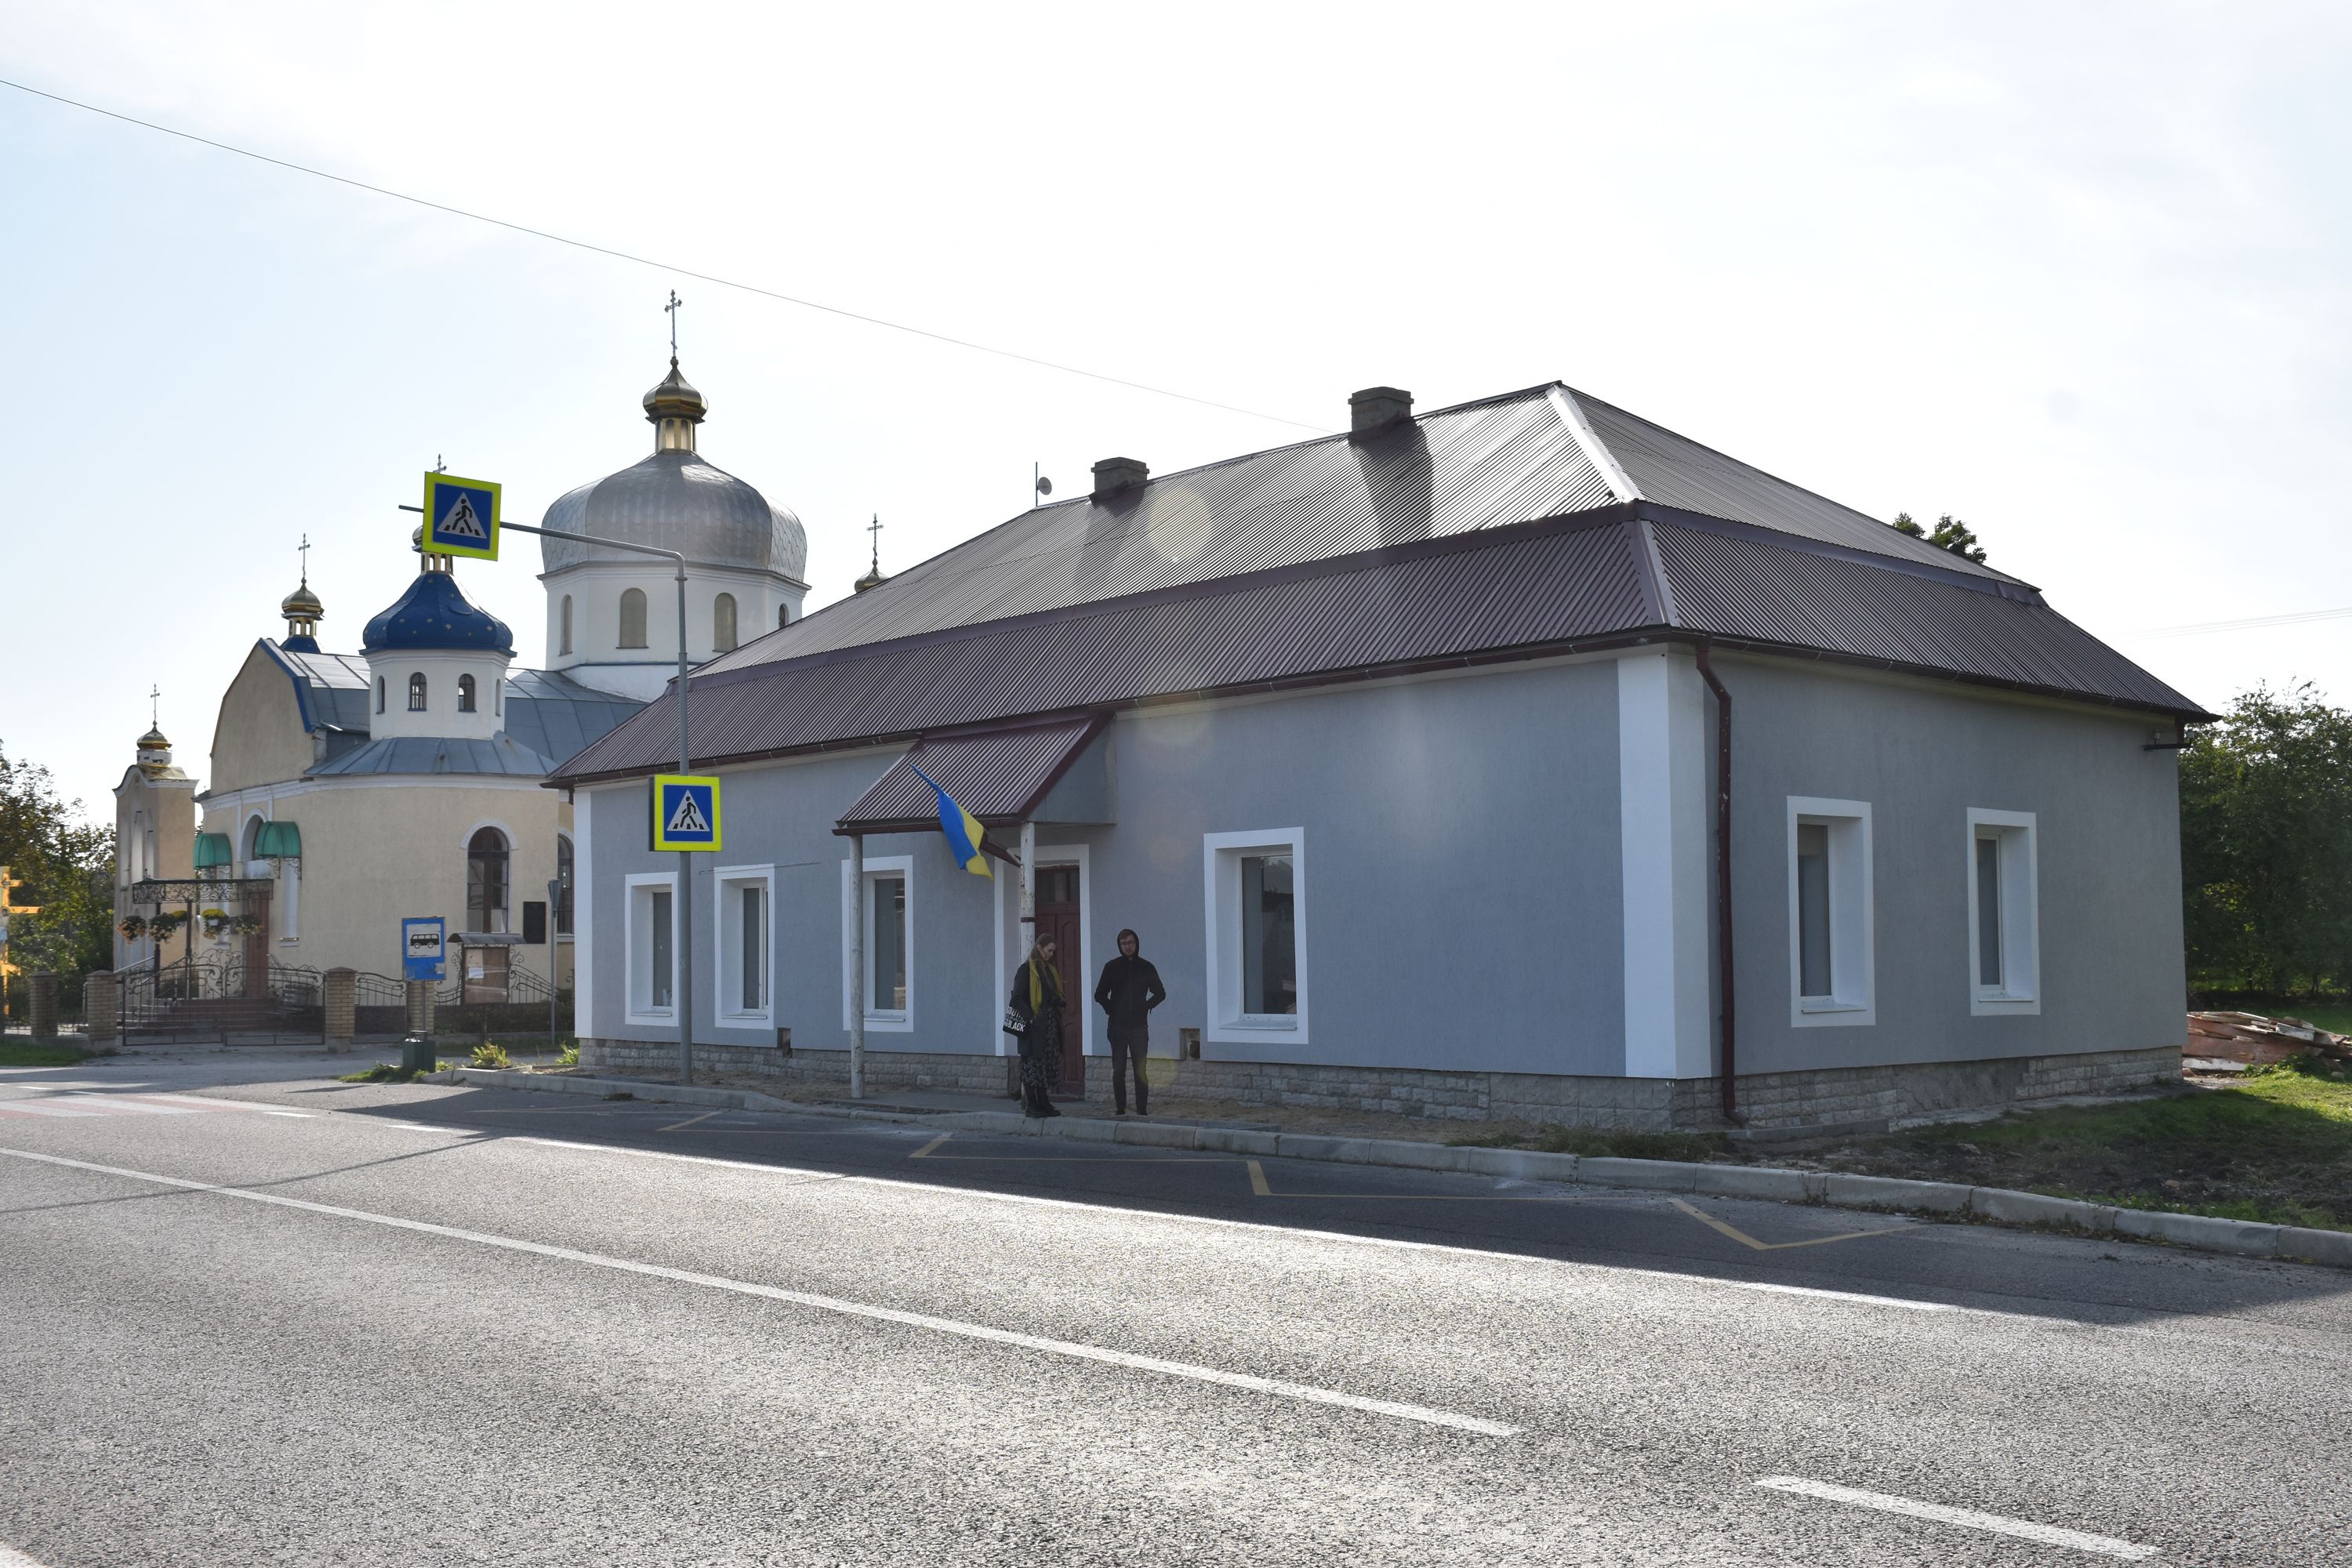 Будинок колишньої німецької кооперативи, нині староство і музей, а поруч кірха-церква - фото 80859